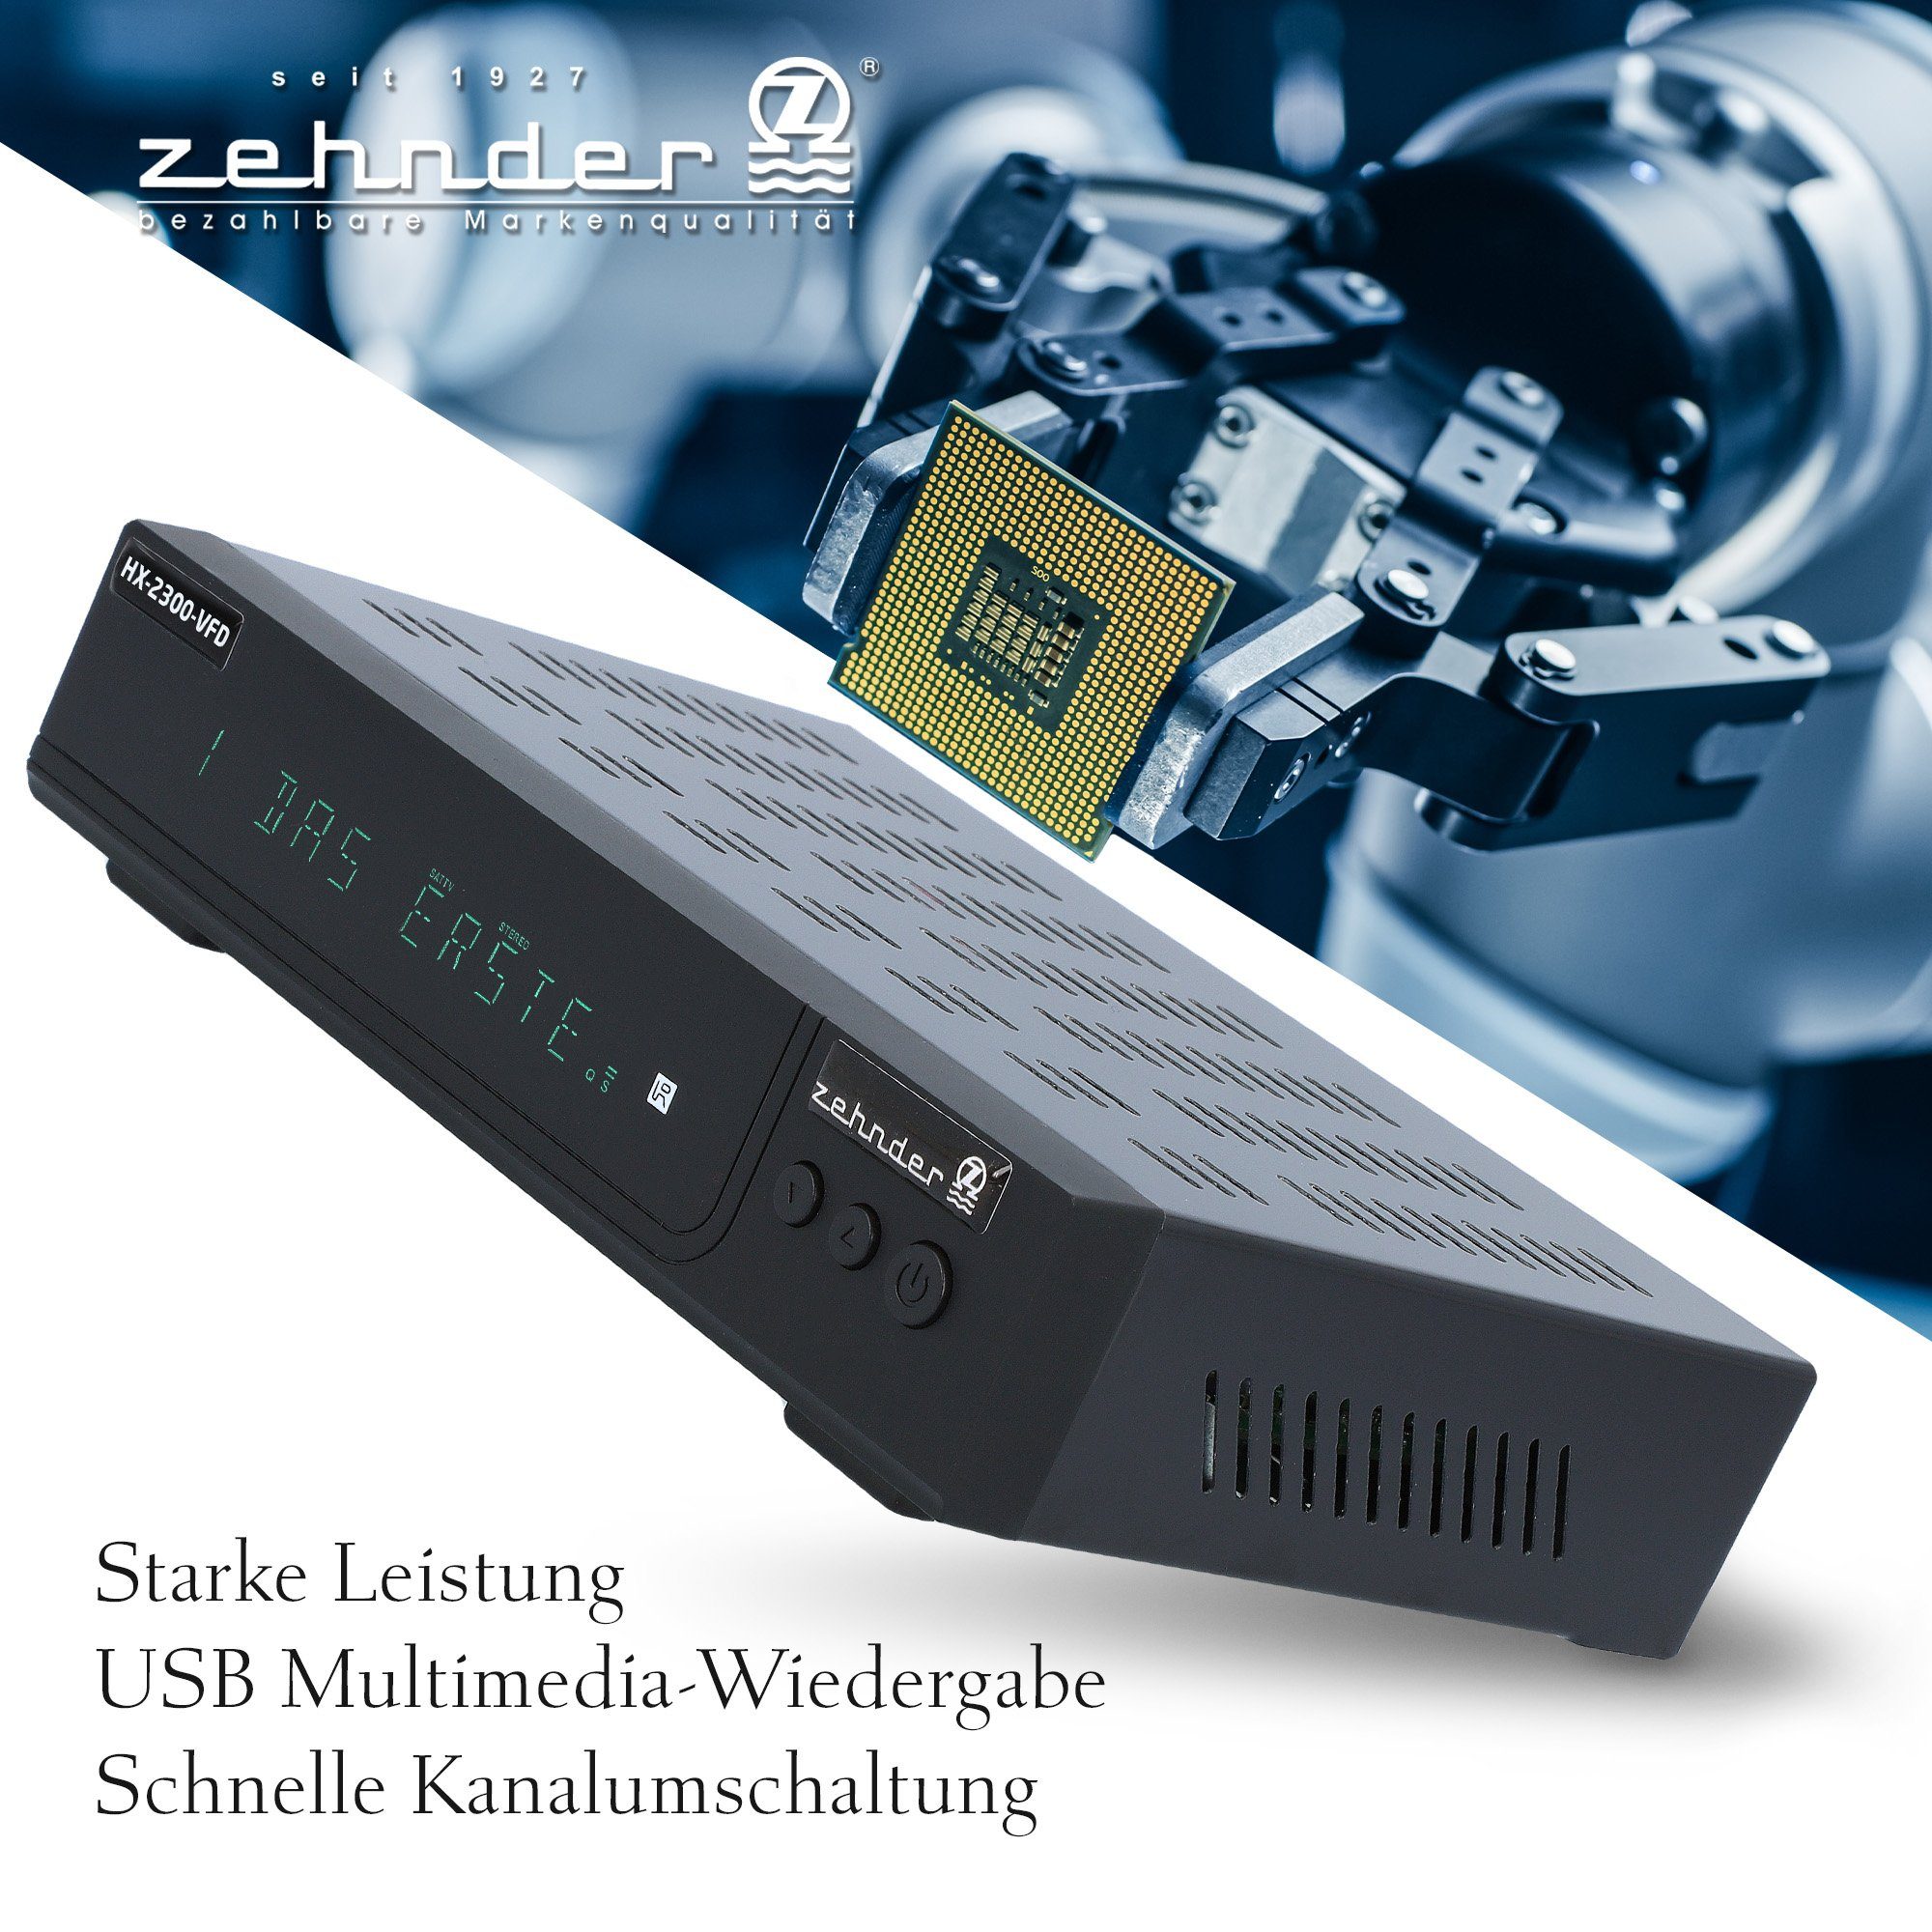 Zehnder HX-2300-Alphanumerisches Coaxial, Einkabel PVR, Display tauglich) SCART, USB, HDMI, (AAC-LC, SAT-Receiver 12V 